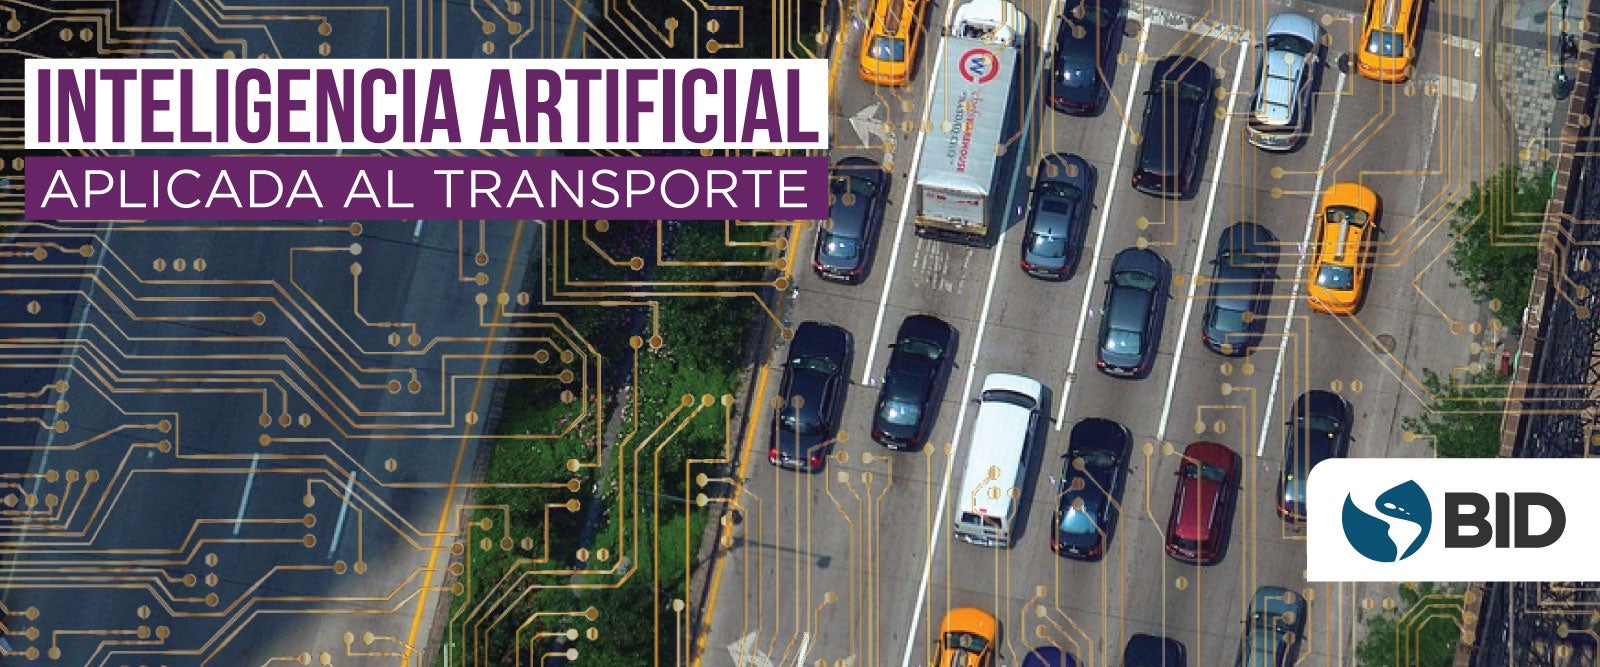 REA Inteligencia Artificial en el Transporte course image